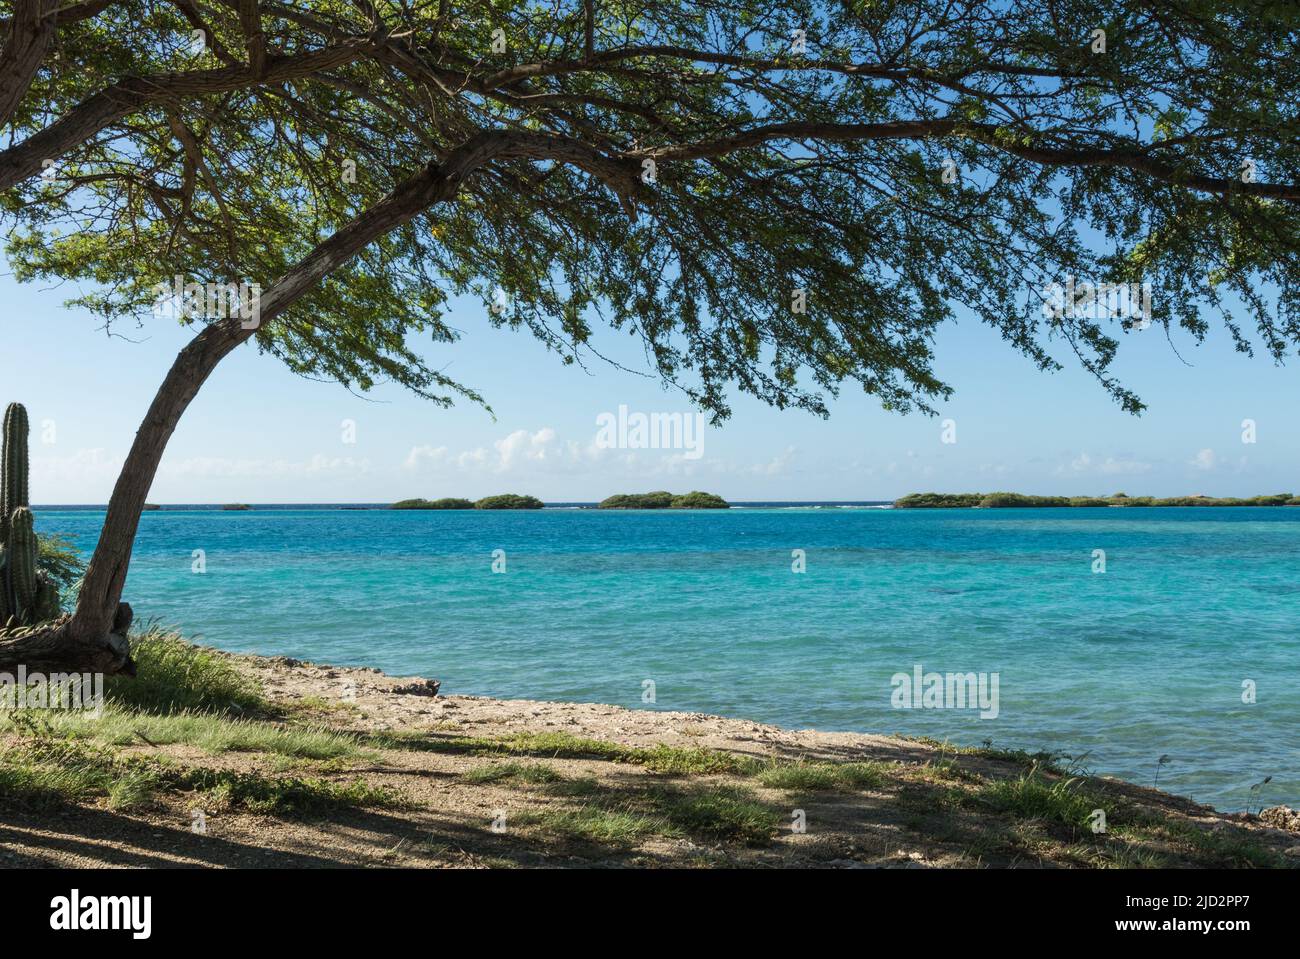 Divi-divi tree rivolta verso il mare turchese in Aruba Foto Stock